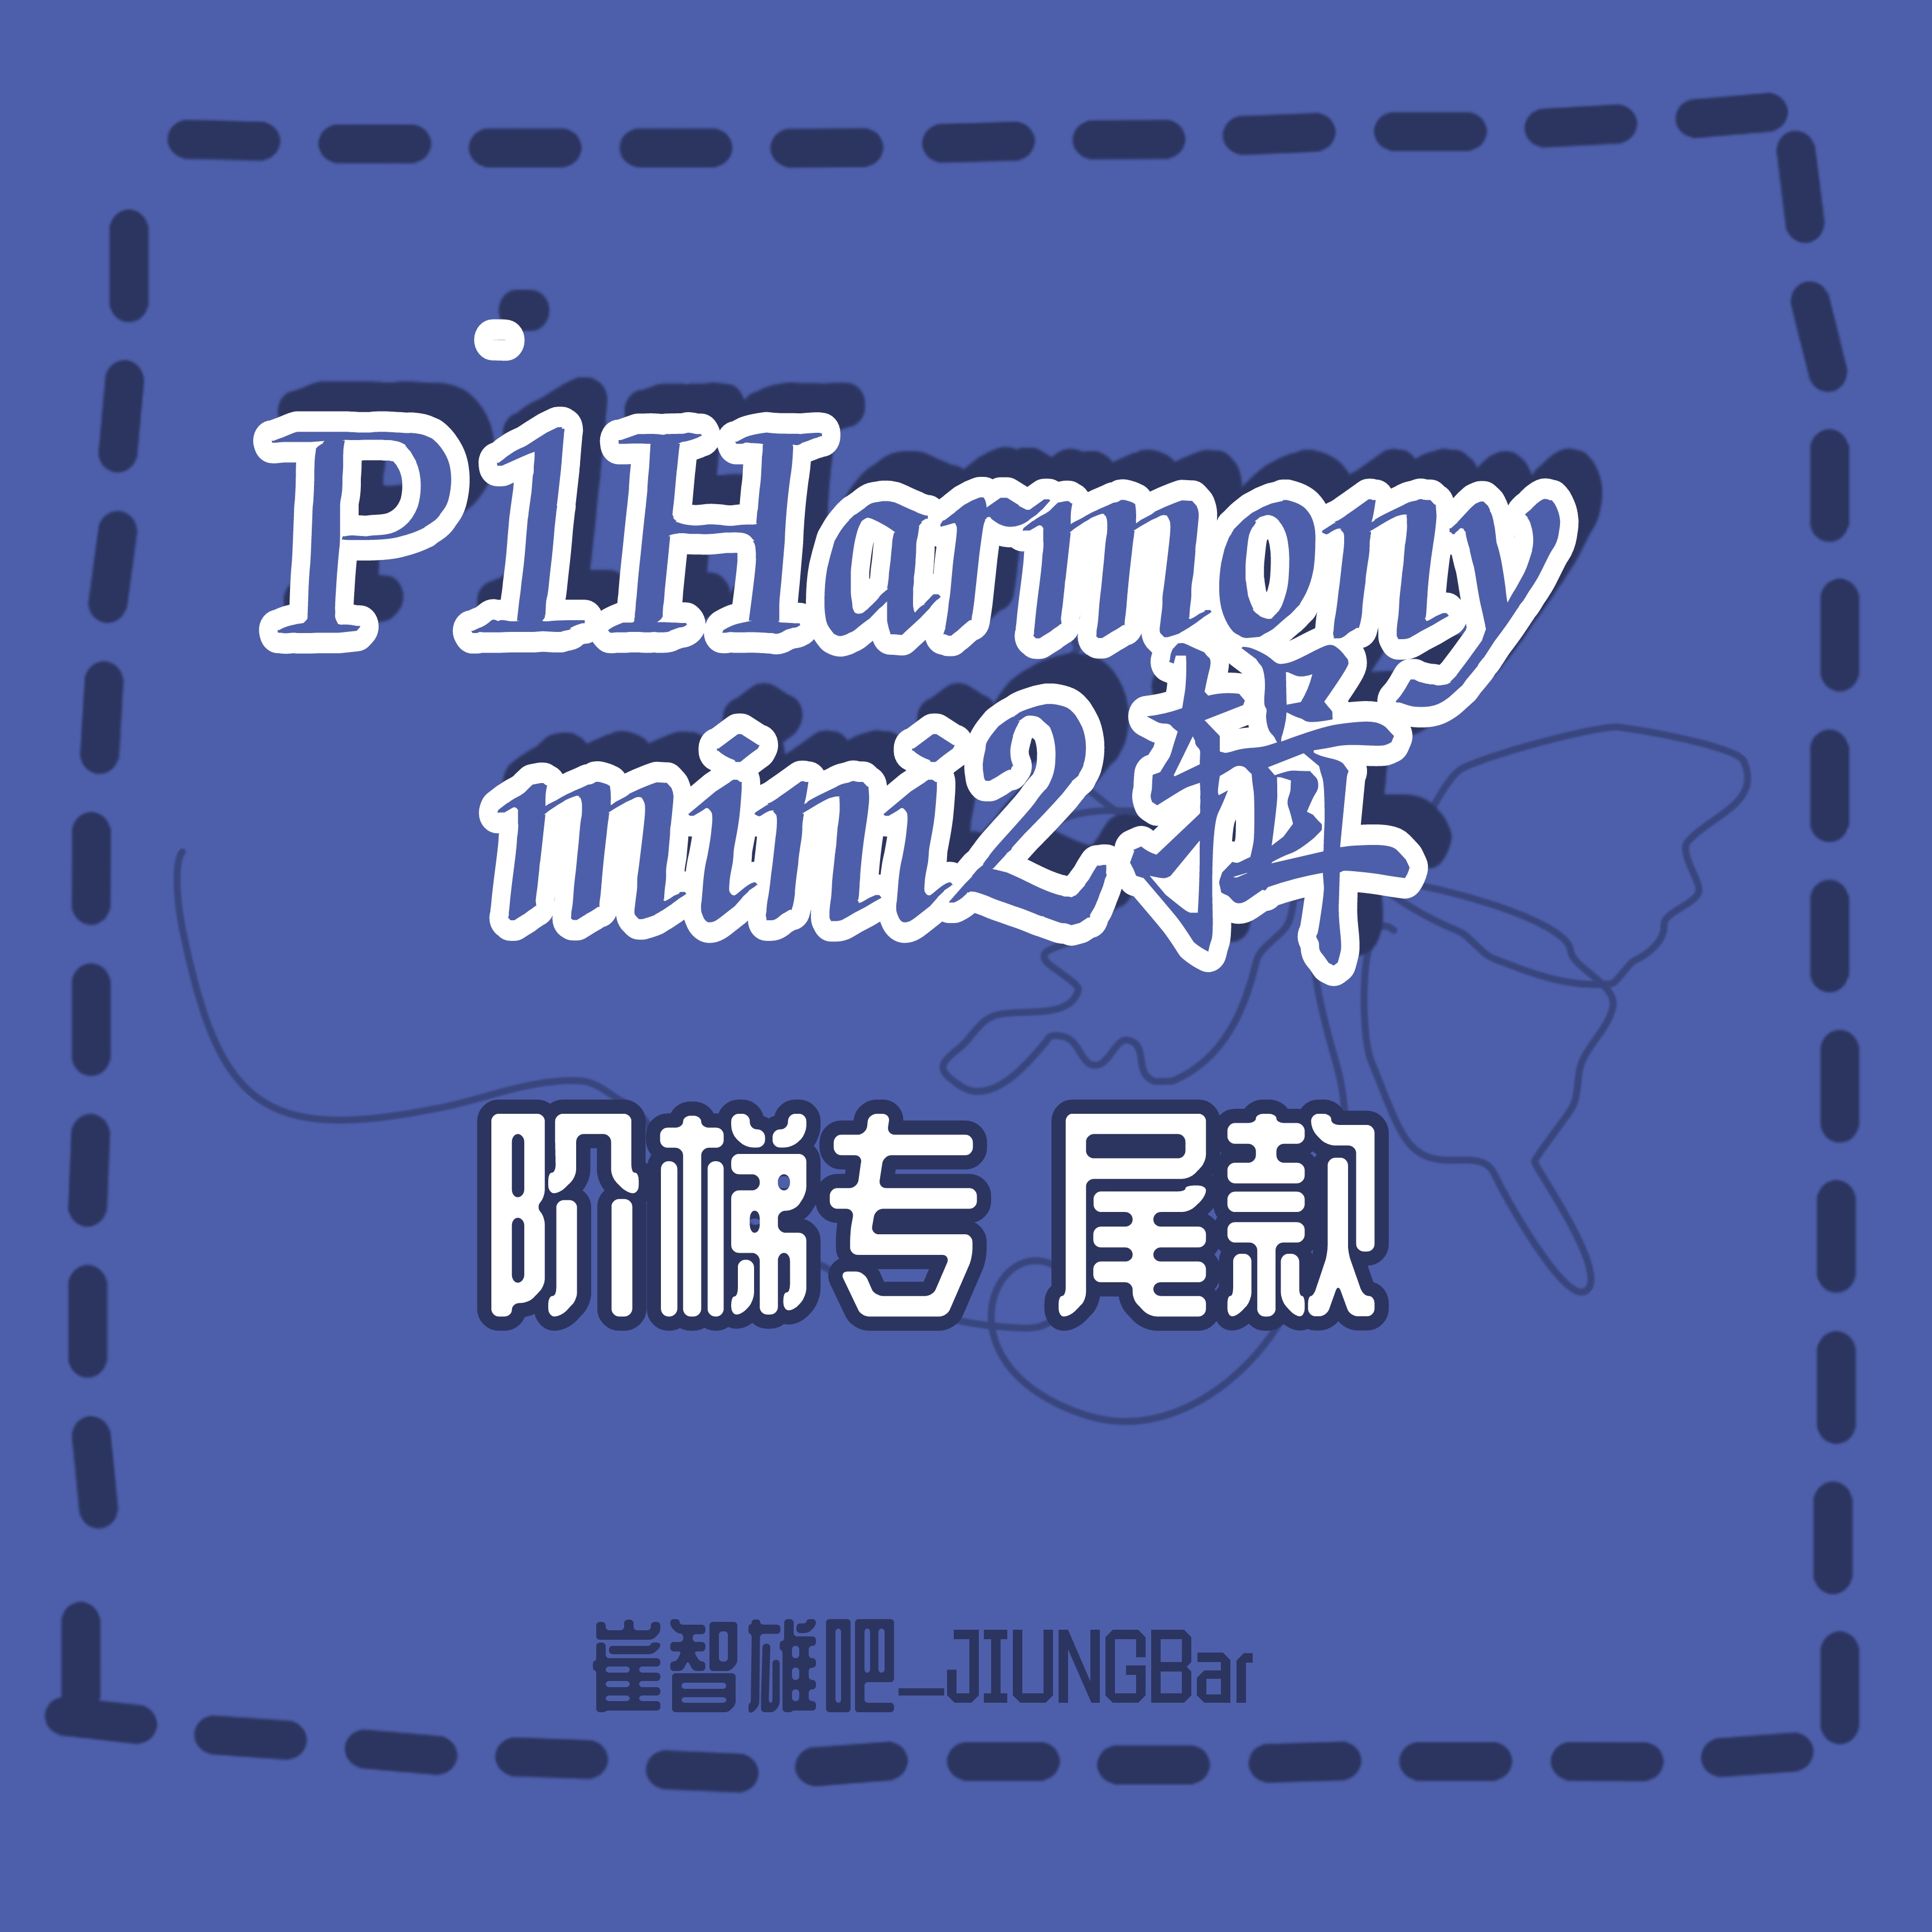 [补款 阶梯专] P1Harmony - Mini Album Vol.2 [DISHARMONY : BREAK OUT] _崔智雄吧_JIUNGBar